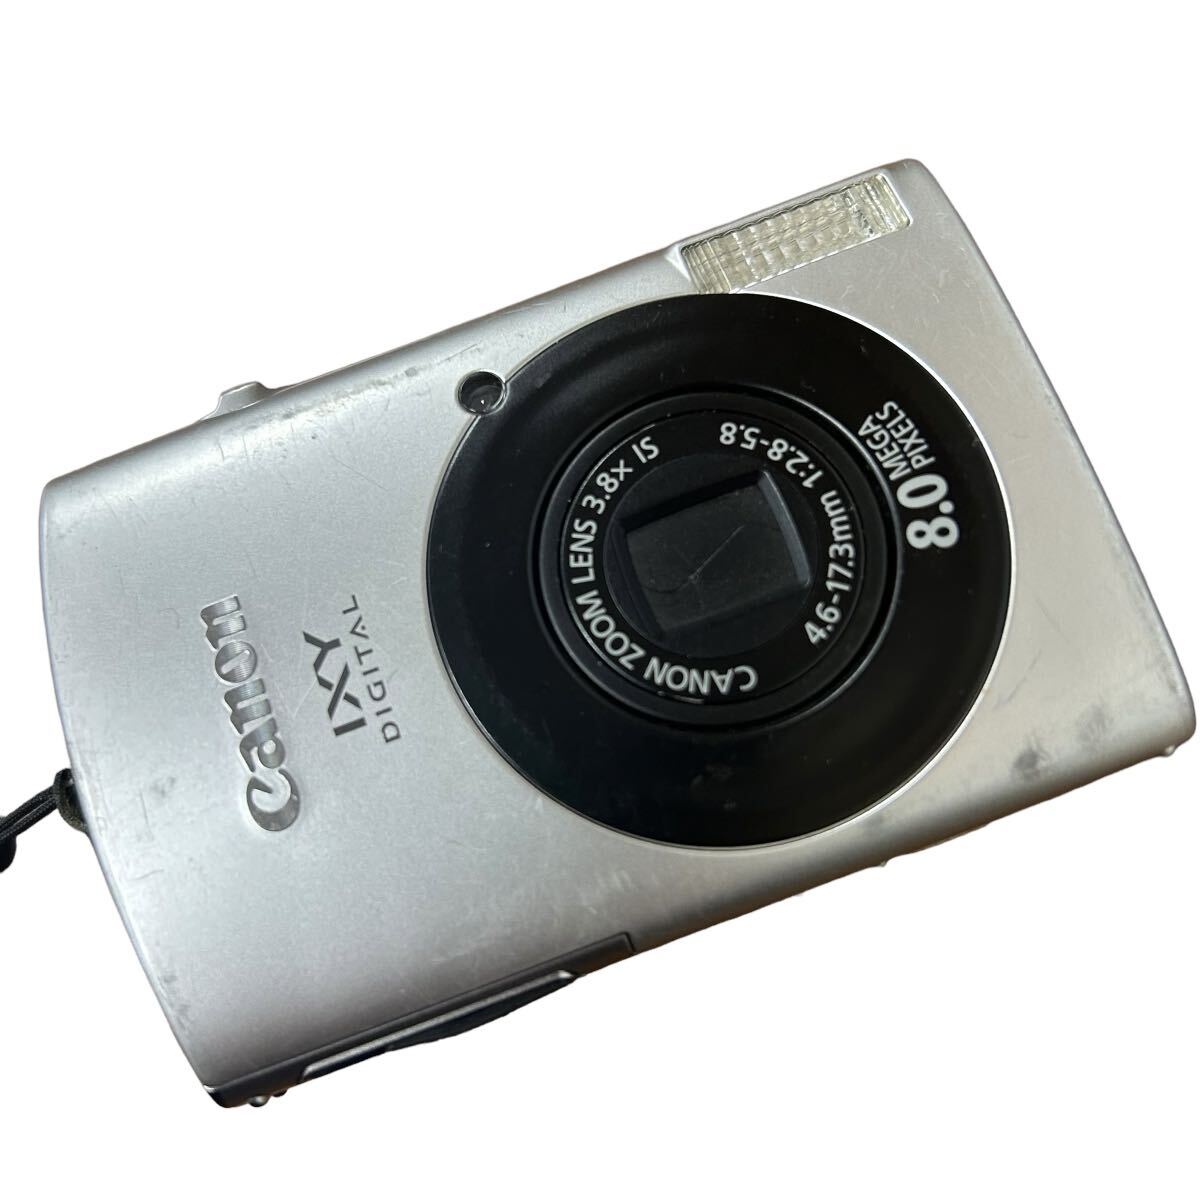 Canon キャノン IXY DIGITAL 910 IS PC1249 コンパクト デジタルカメラ 純正バッテリー付 デジカメ イクシー_画像8